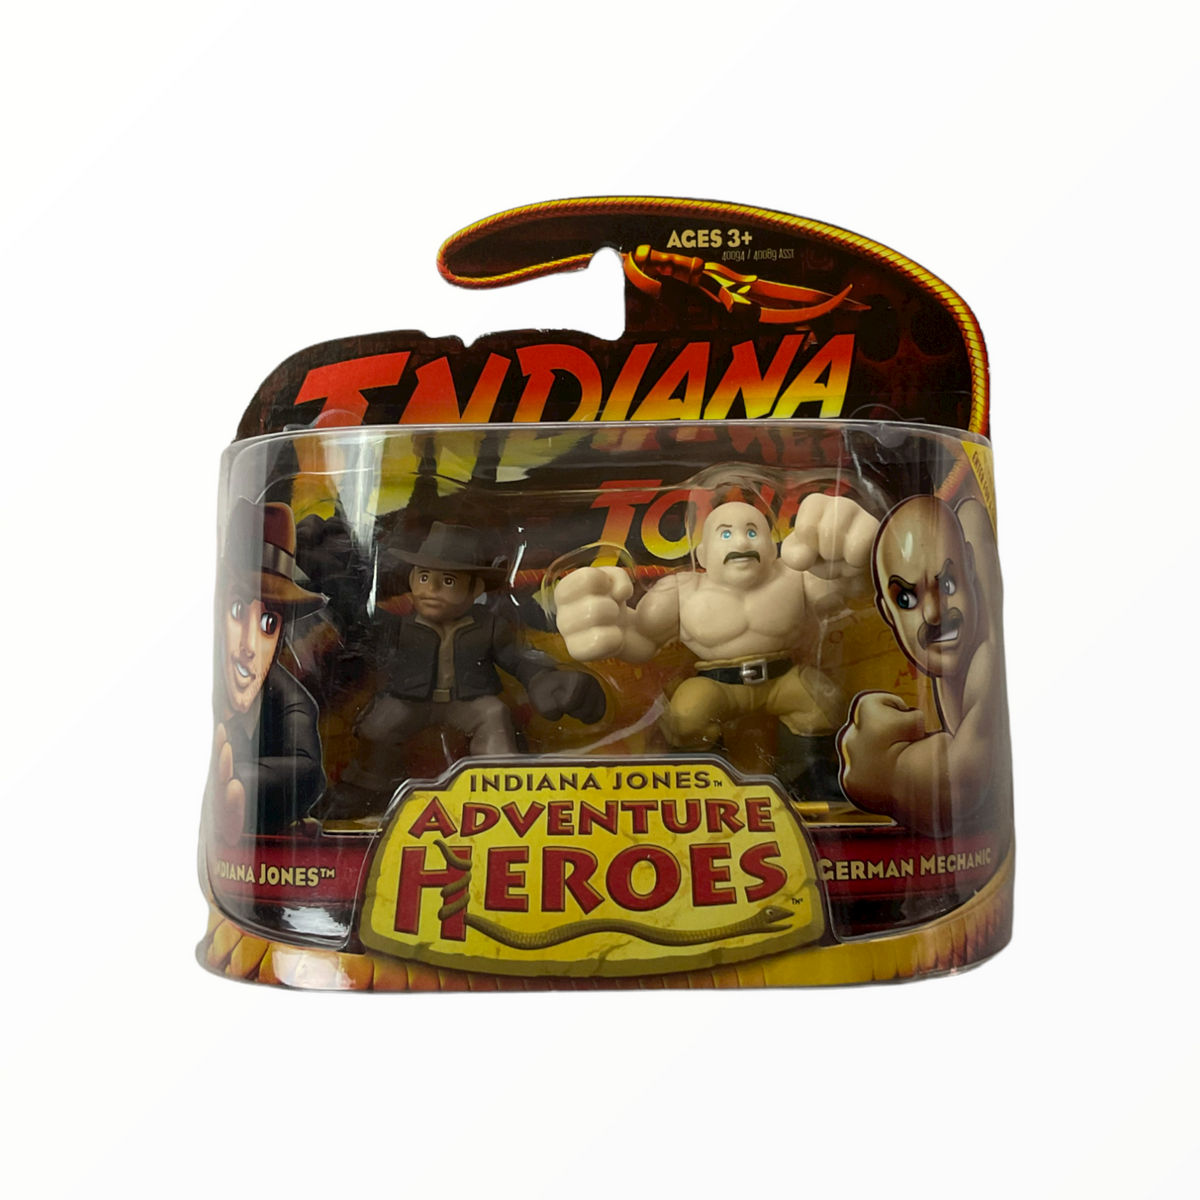 Indiana Jones and German Mechanic Indiana jones Adventure Heroes